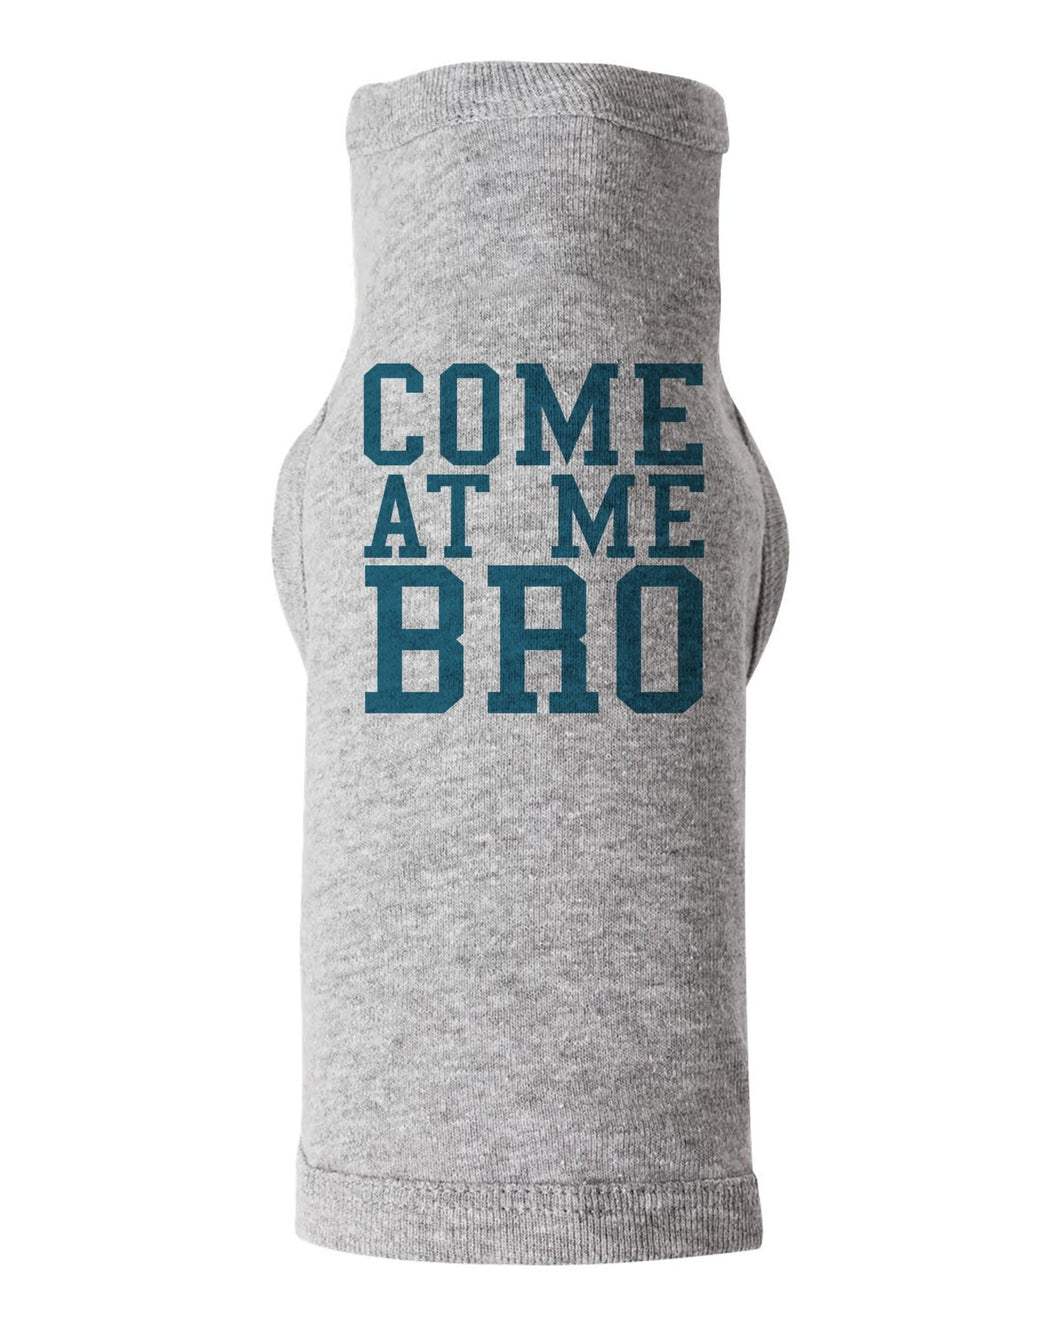 Come At Me Bro / Dog Shirt - Baffle